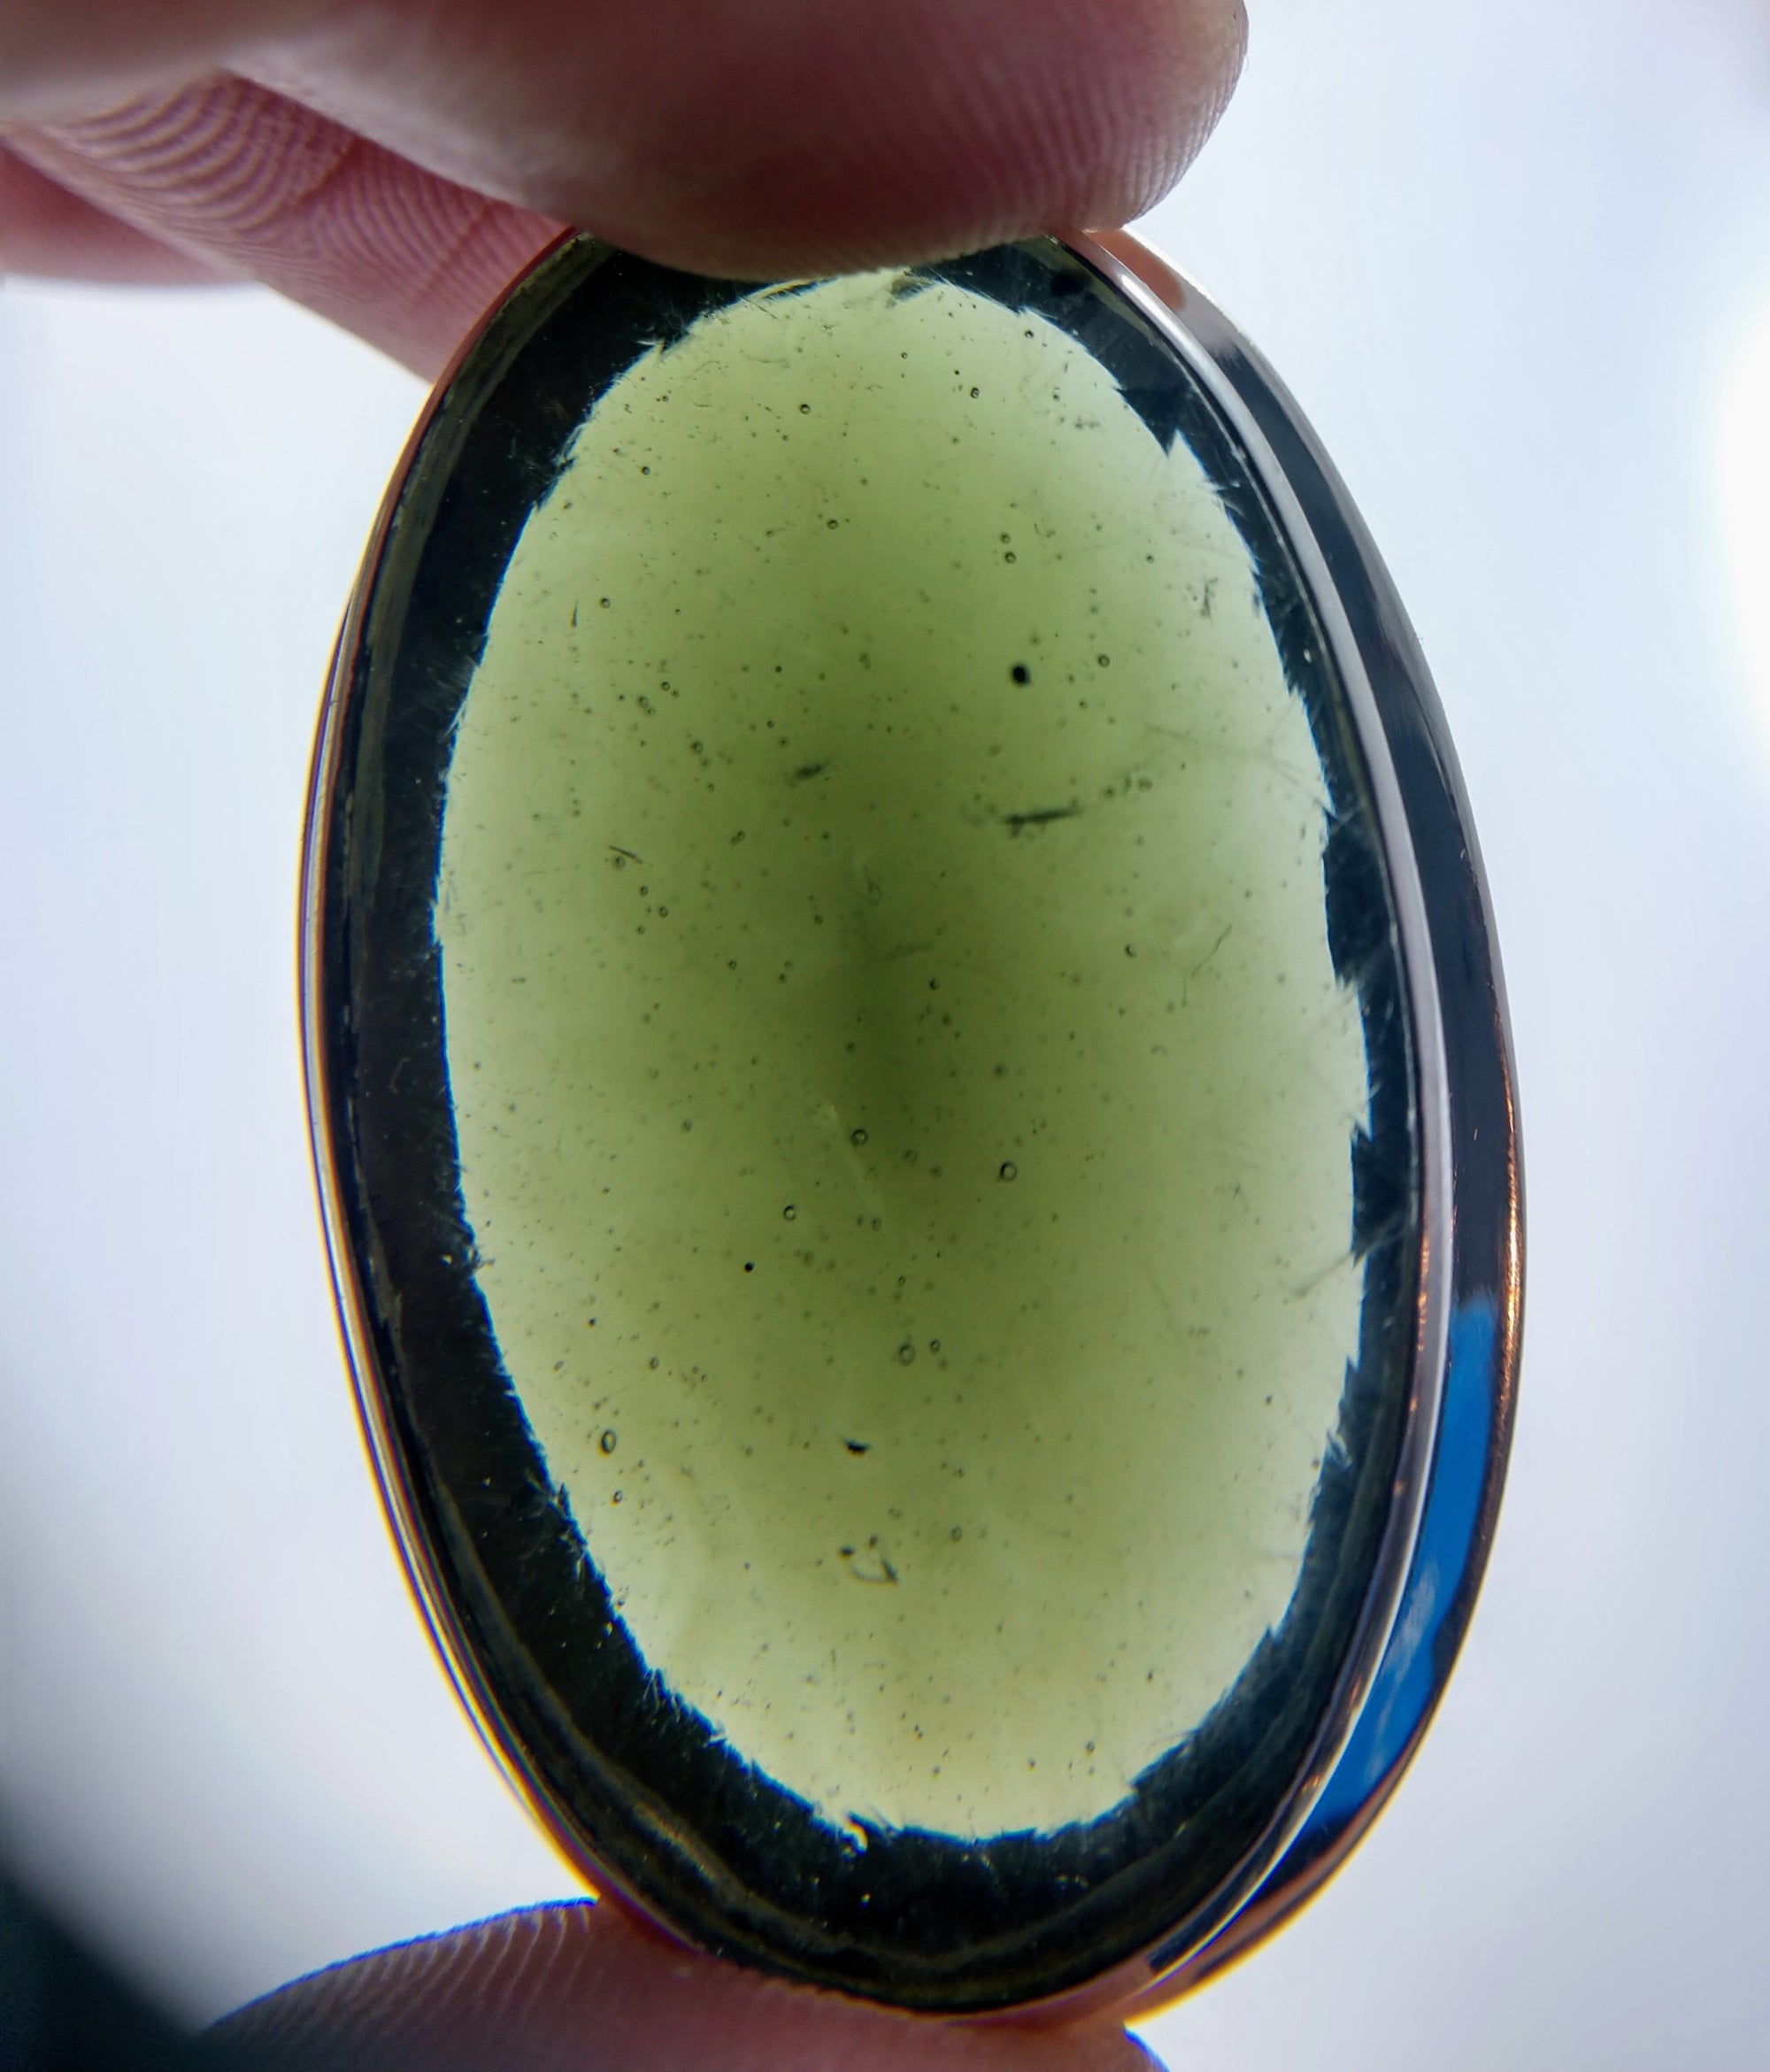 Faceted Moldavite Pendant, 18.7 grams